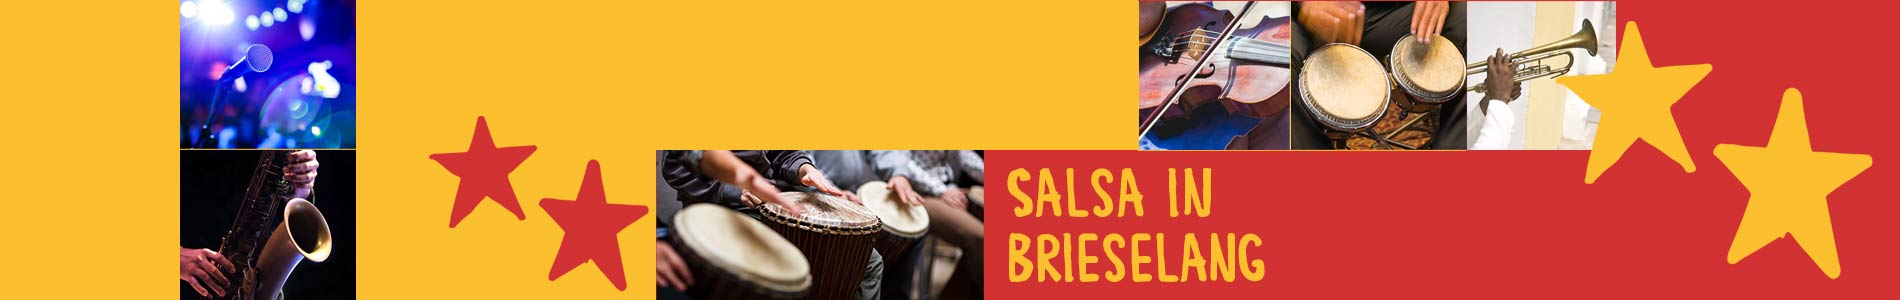 Salsa in Brieselang – Salsa lernen und tanzen, Tanzkurse, Partys, Veranstaltungen